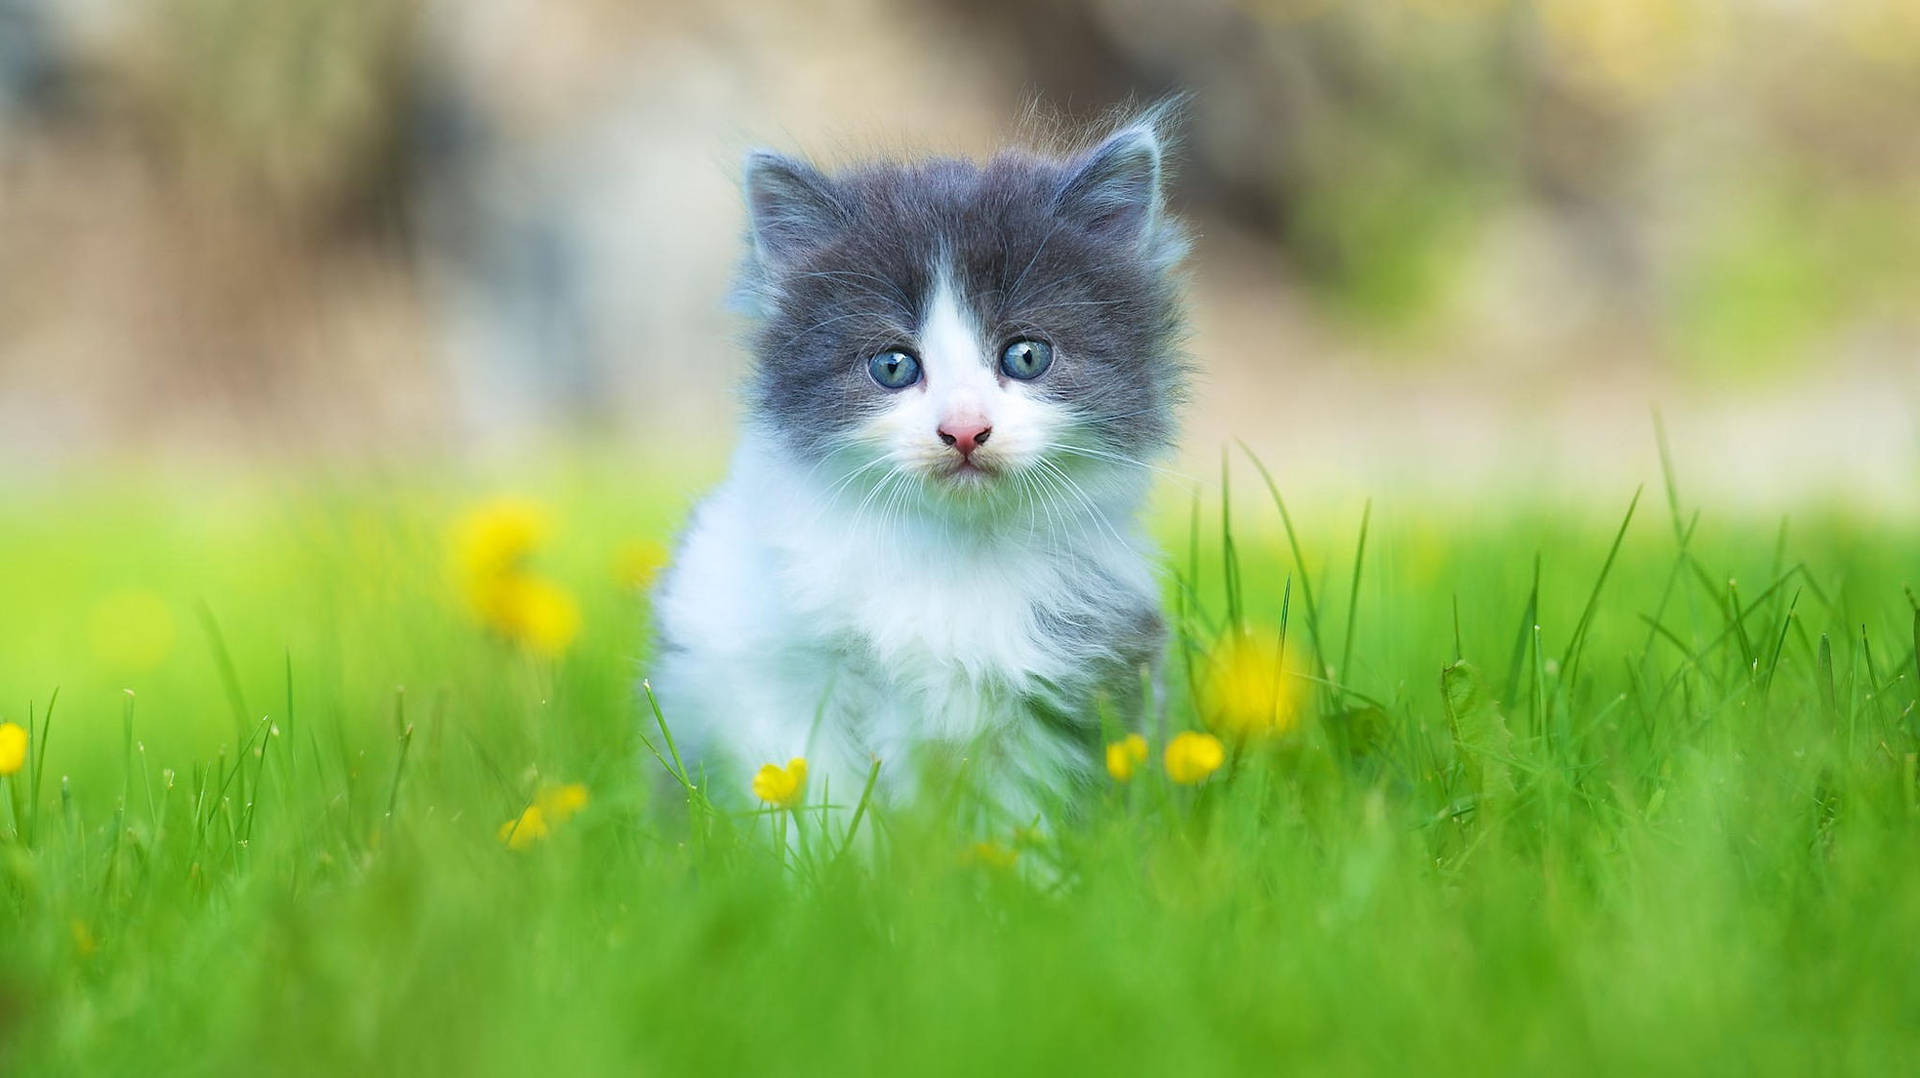 Cute Cat In Grass Background